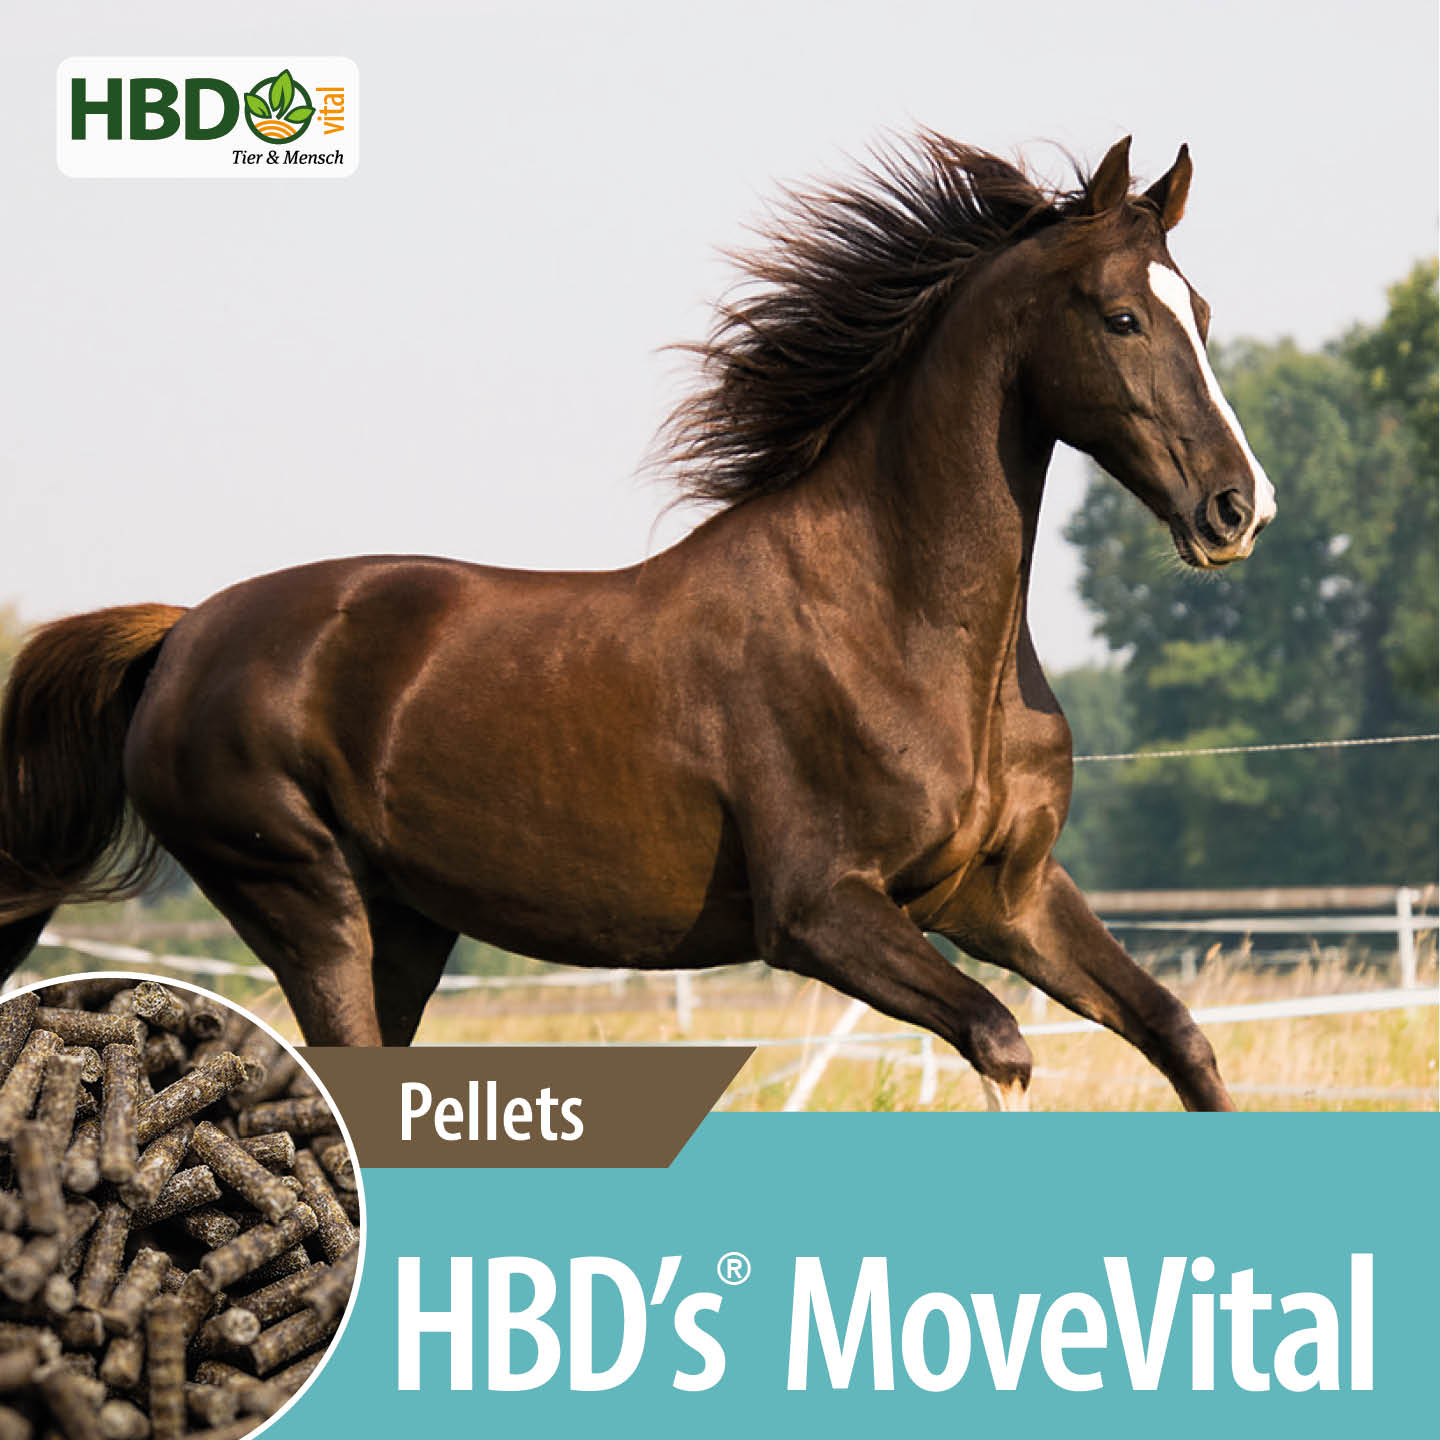 Shopbild für HBD’s MoveVital für Pferde - Das Bild zeigt den Produktnamen sowie den Hinweis, dass es sich um Pellets handelt. Ein dunkelbraunes Pferd ist zu sehen.